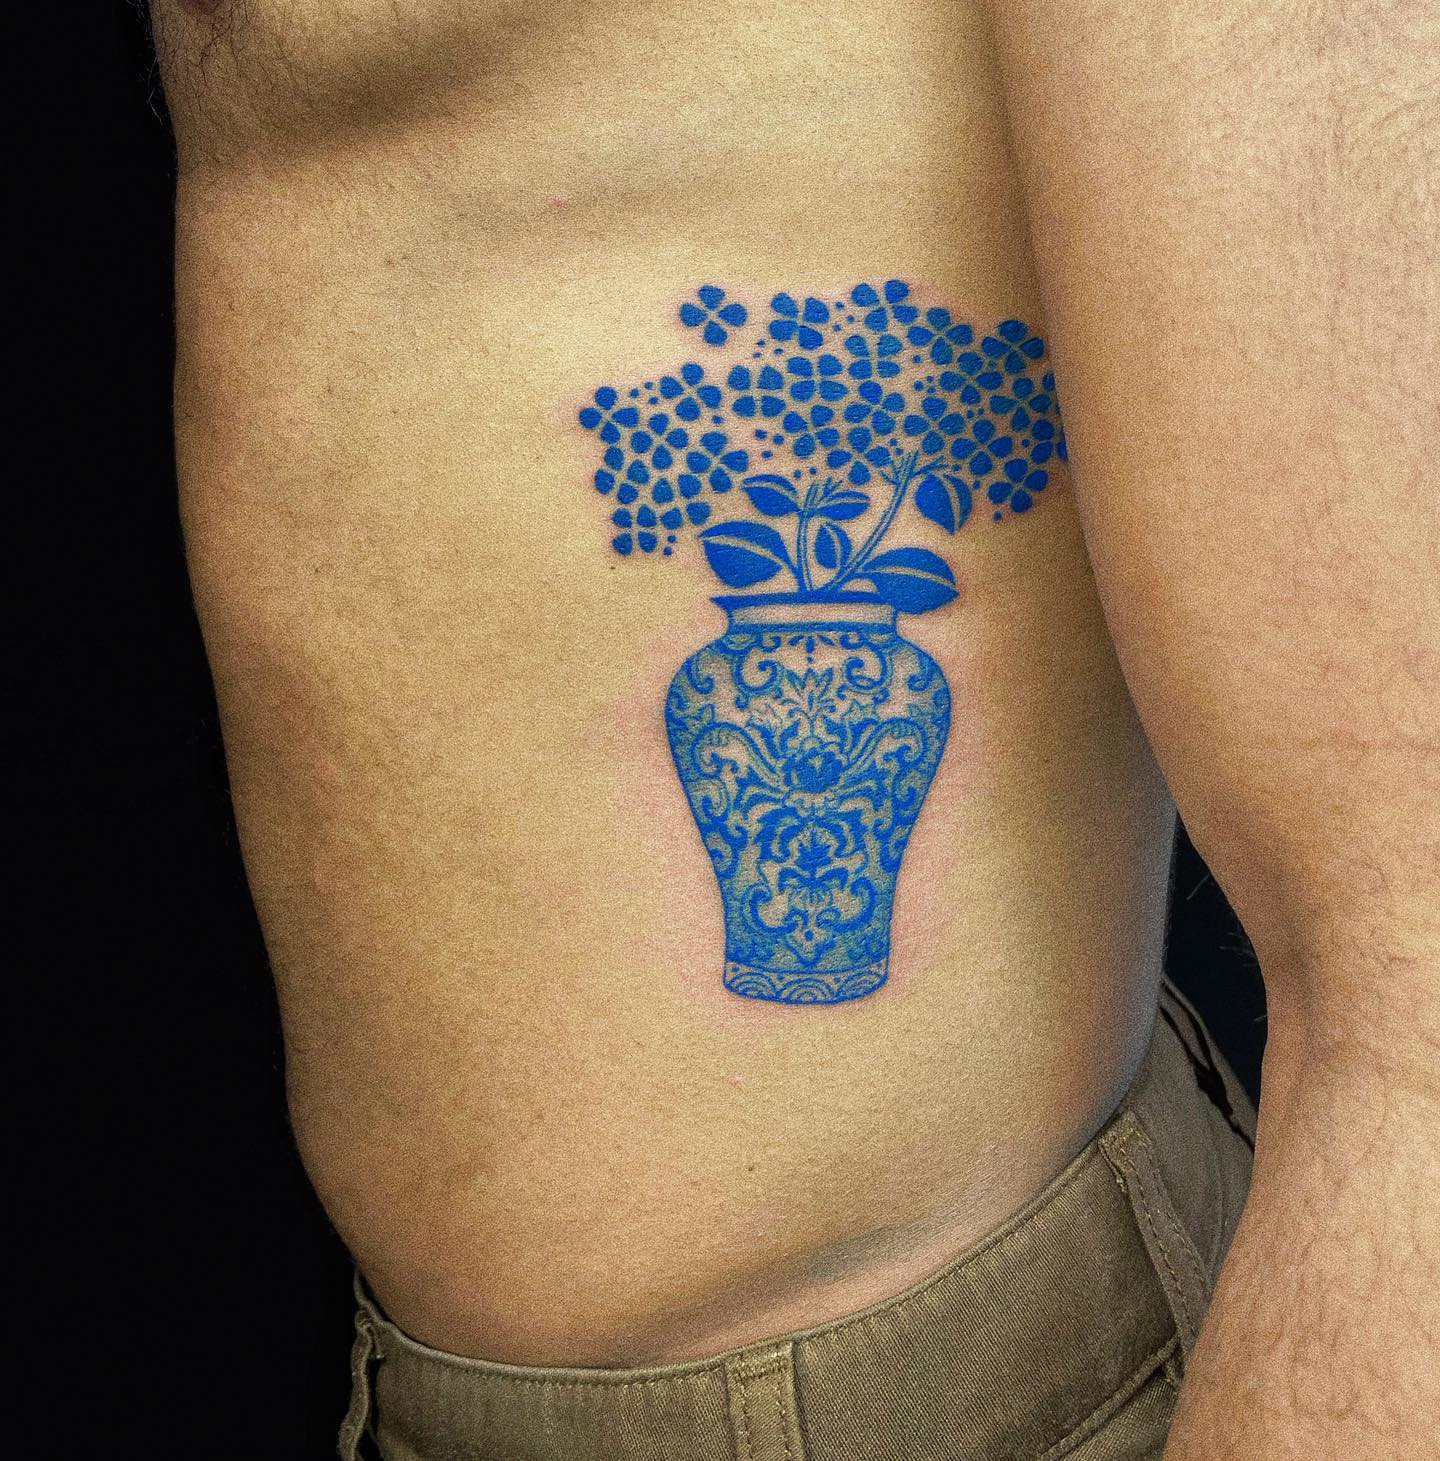 Tatuajes de Hortensias (Hydrangeas): 30 diseños en HD que te dejarán boquiabierto